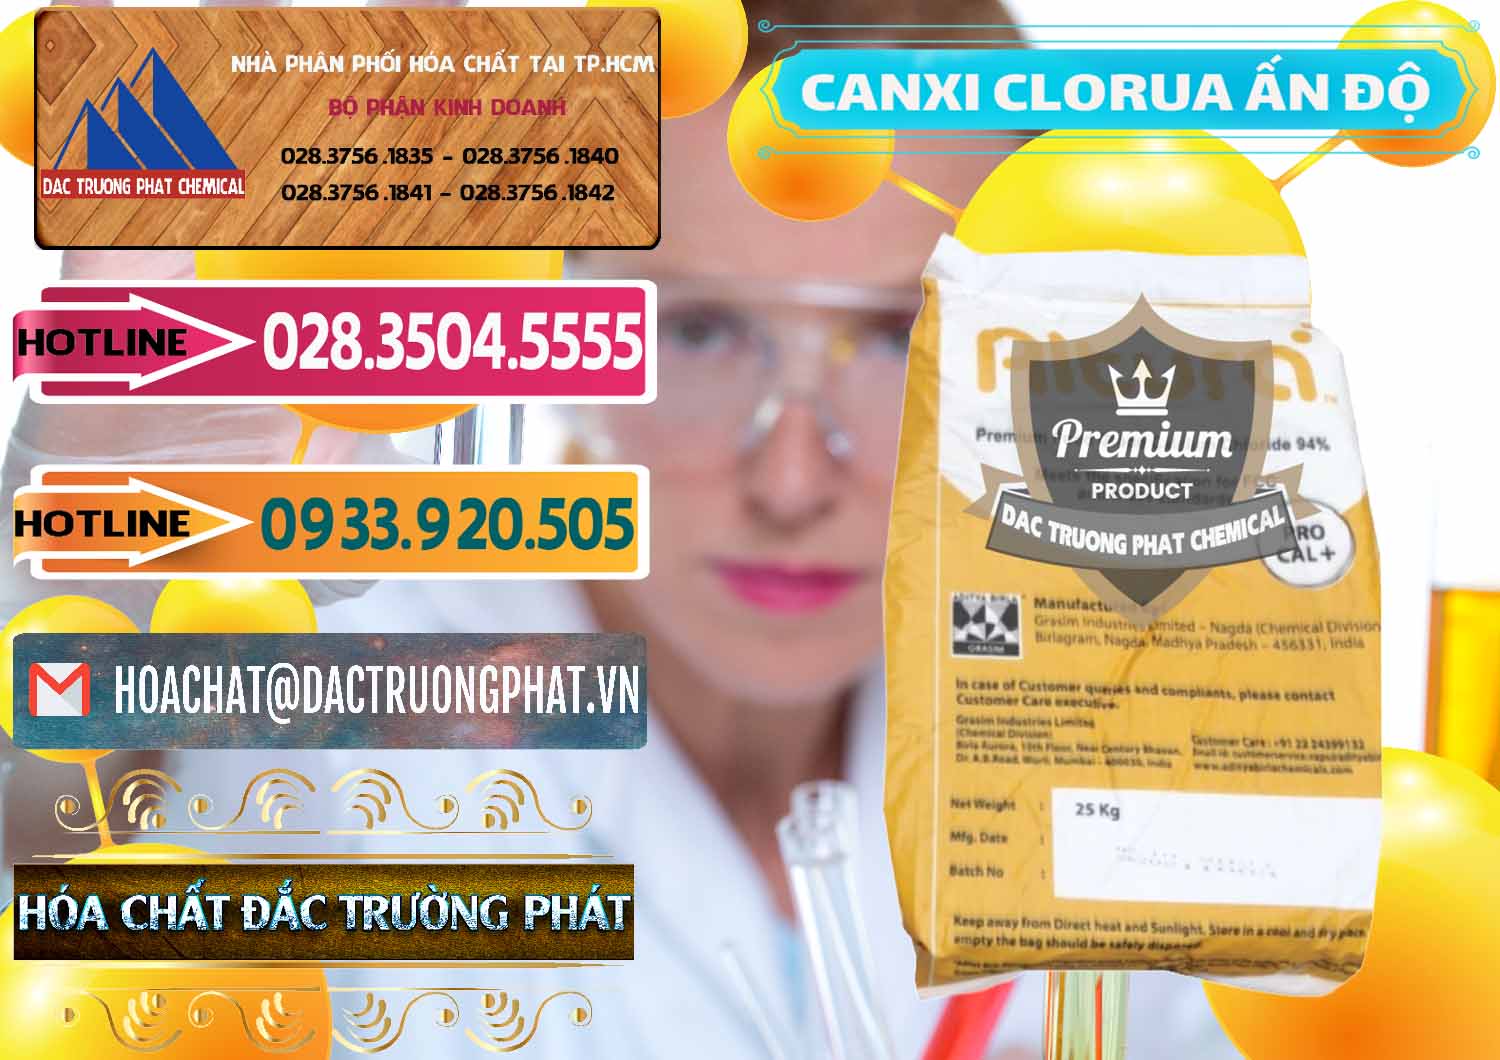 Đơn vị chuyên bán - phân phối CaCl2 – Canxi Clorua Food Grade Altura Aditya Birla Grasim Ấn Độ India - 0436 - Cty chuyên cung ứng - phân phối hóa chất tại TP.HCM - dactruongphat.vn